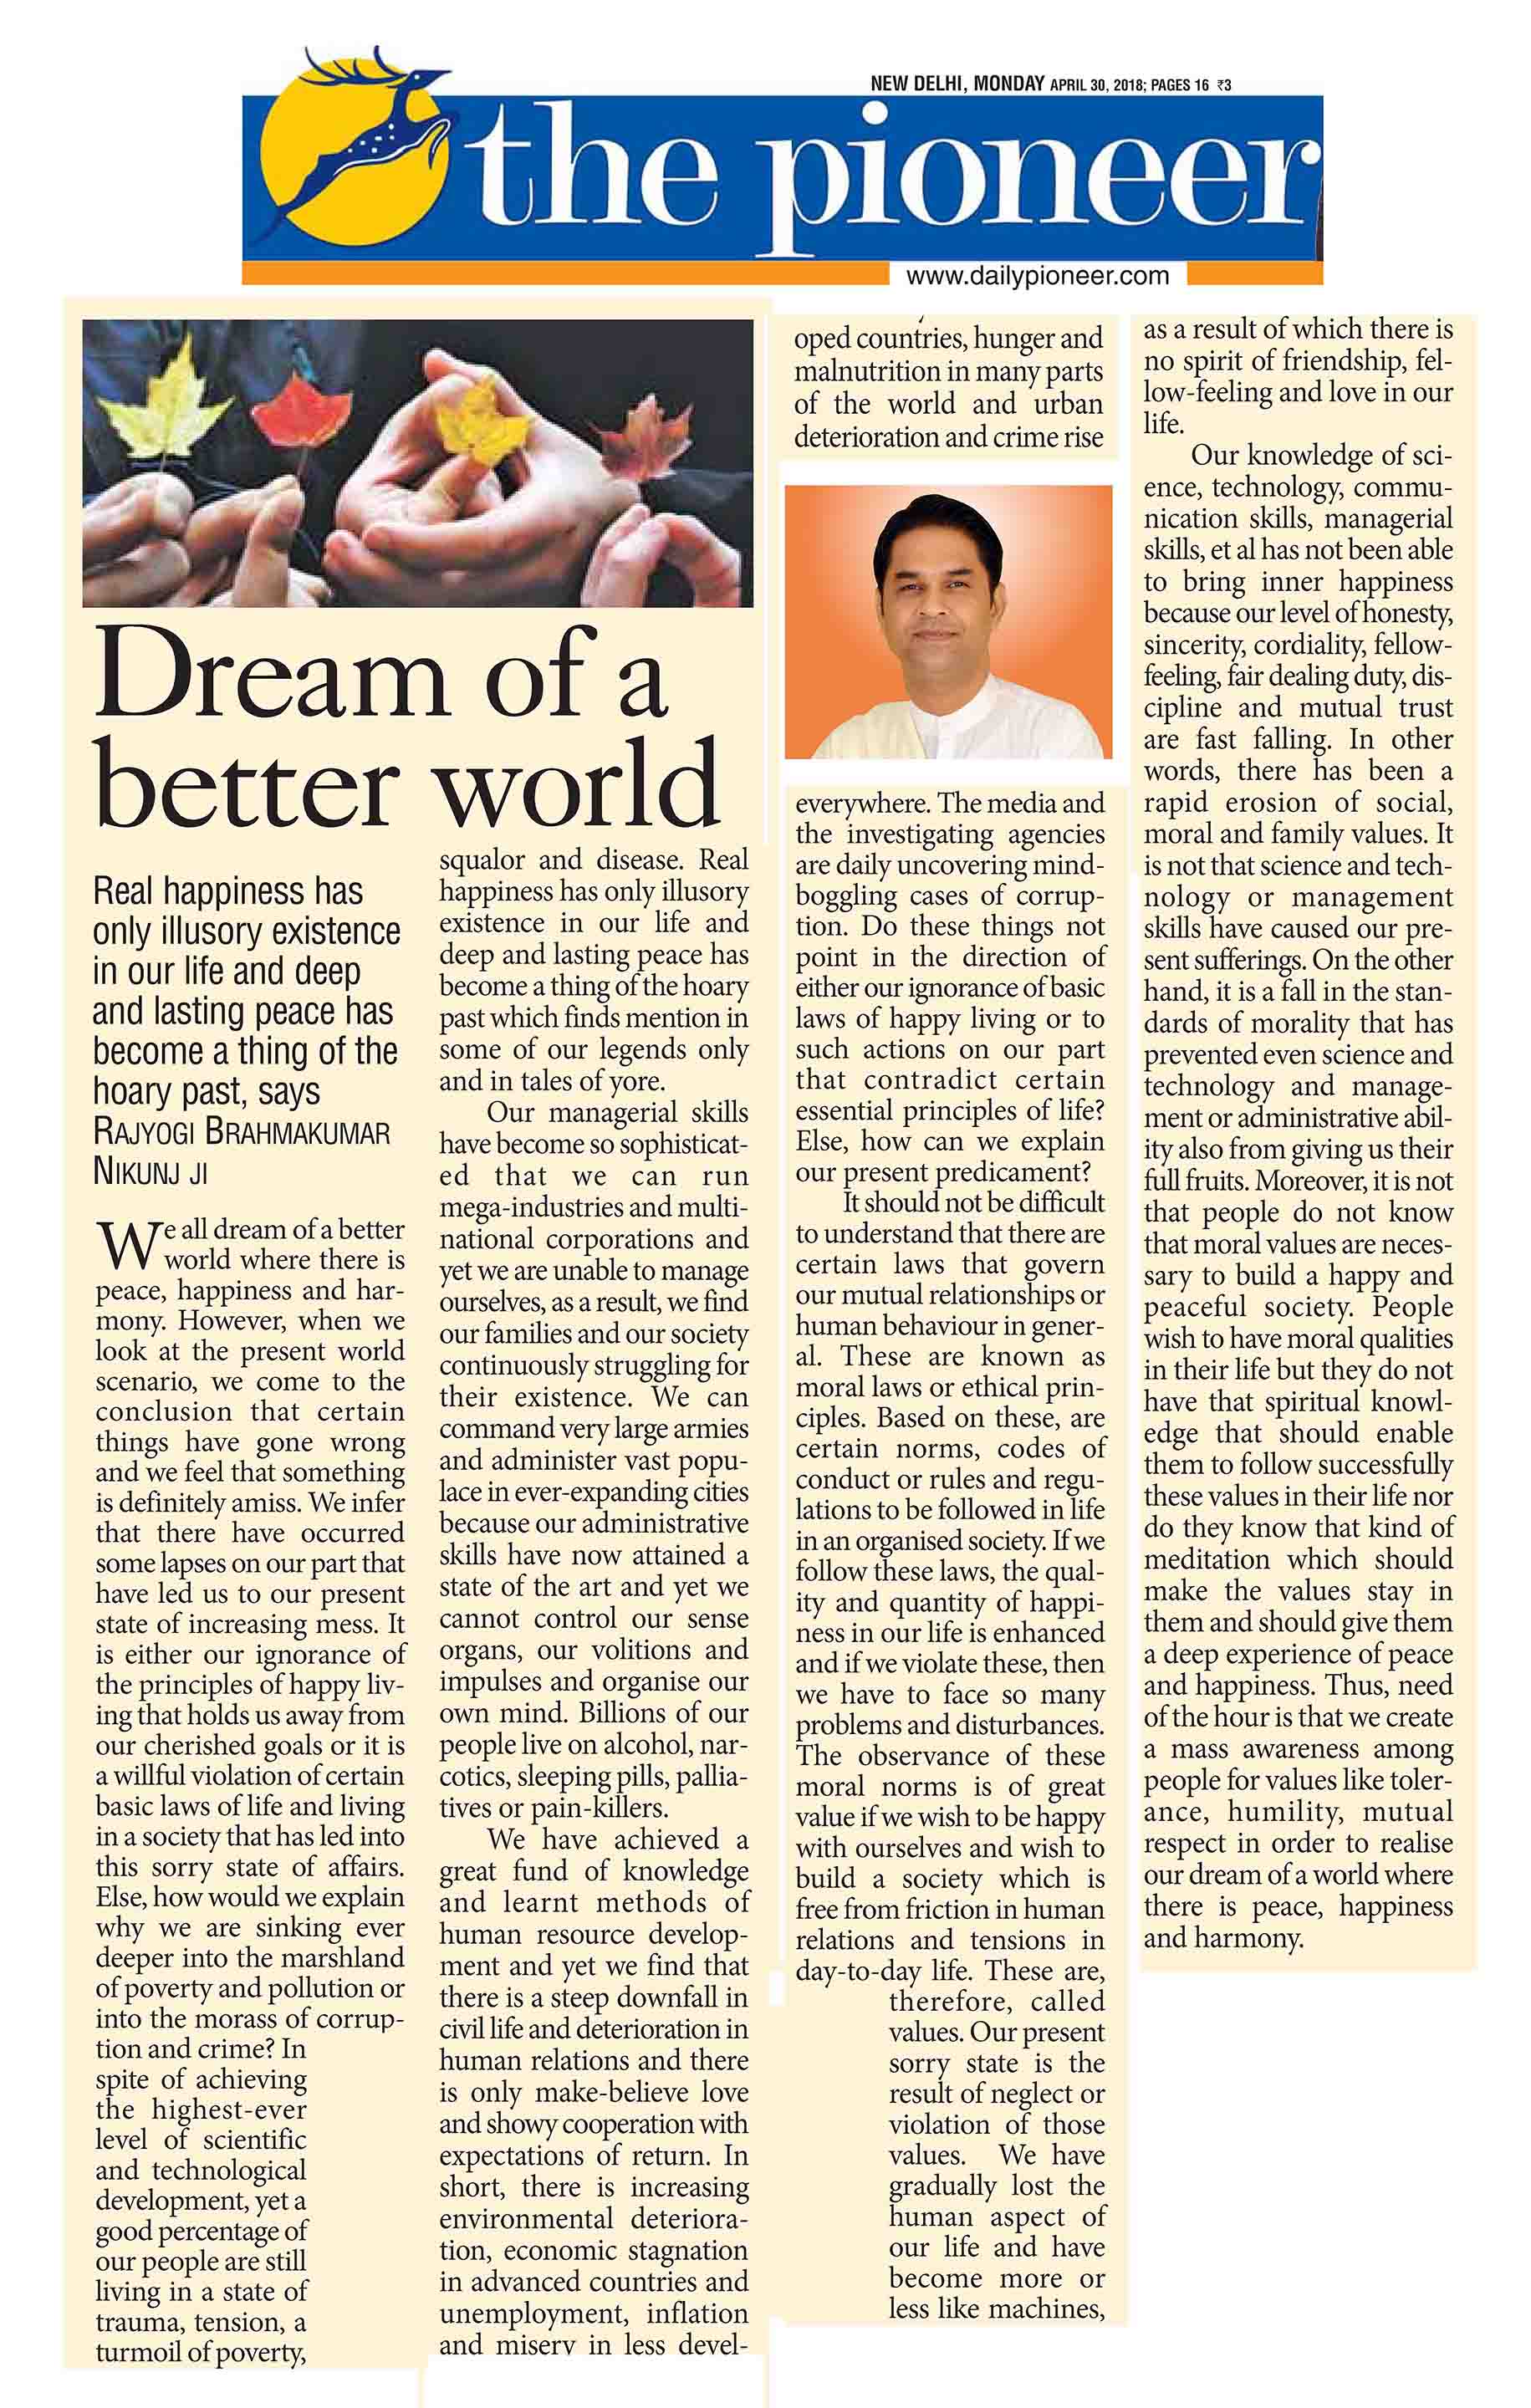 Dream of a better world